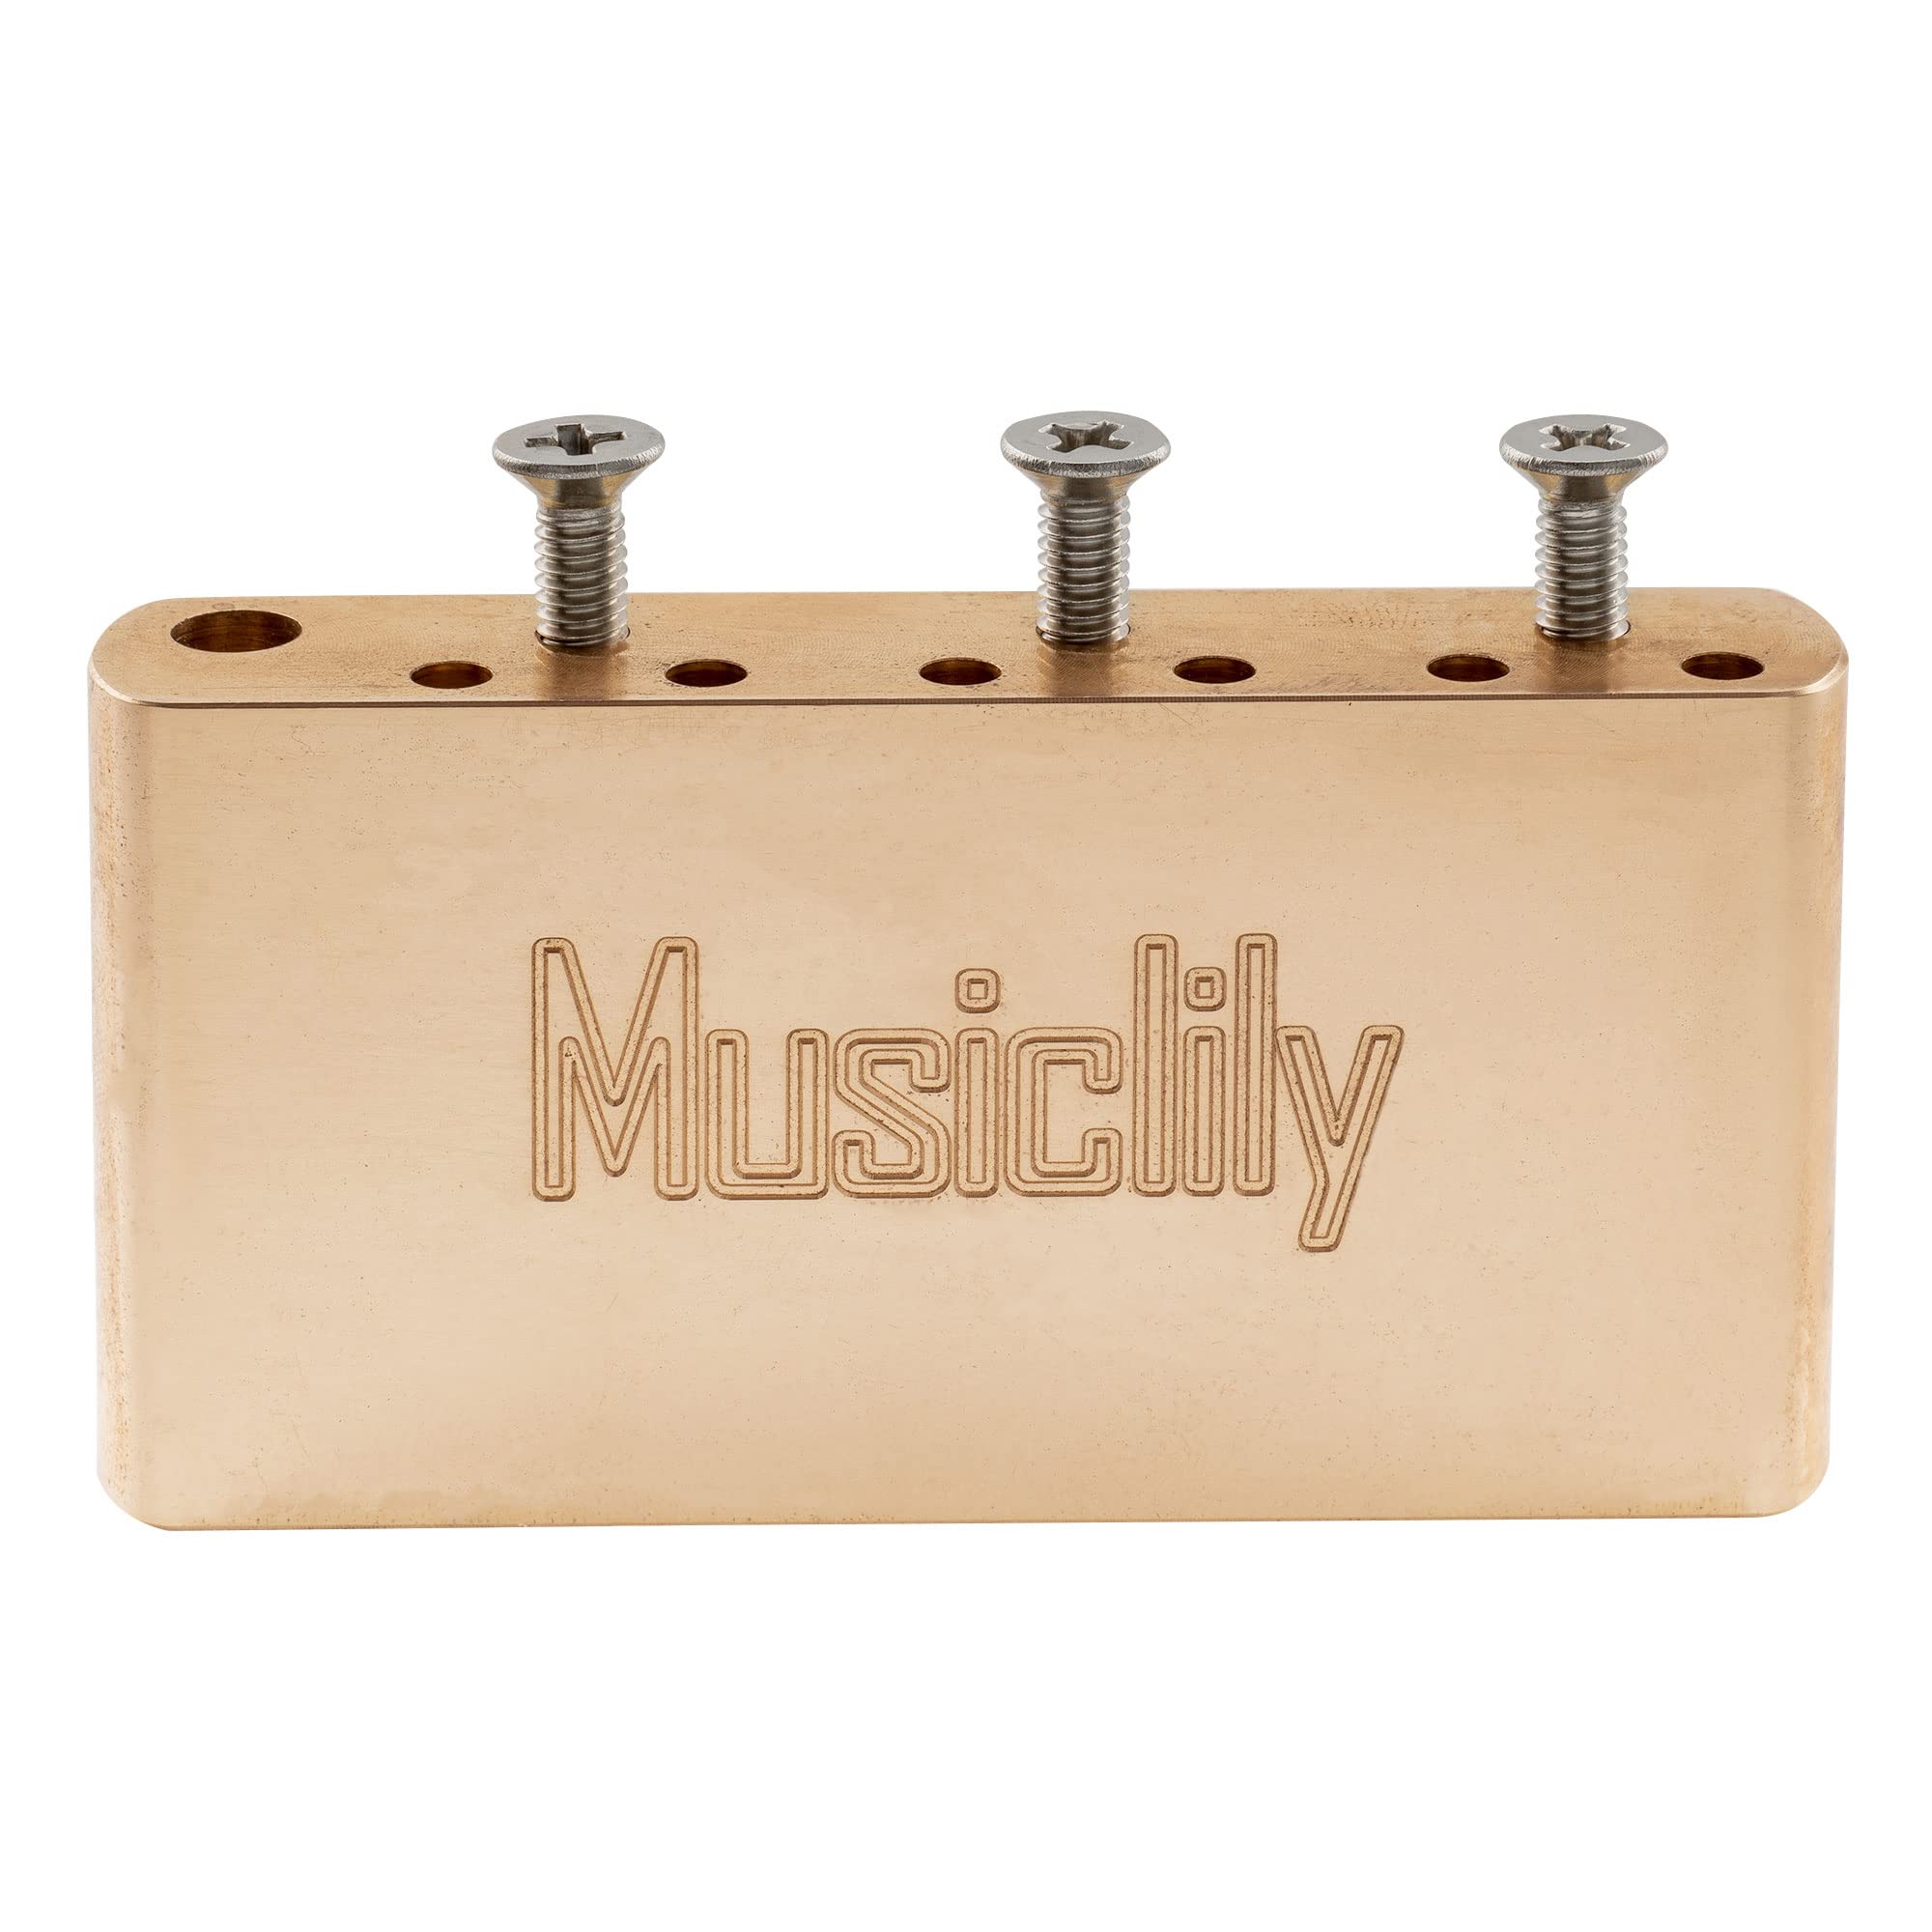 Musiclily Ultra ブラス 36mm ショートMIMスタイル トレモロブロック 10.5mm弦ピッチ中国製Squier Pre-2020 Affinityストラトトレモロブリッジ用